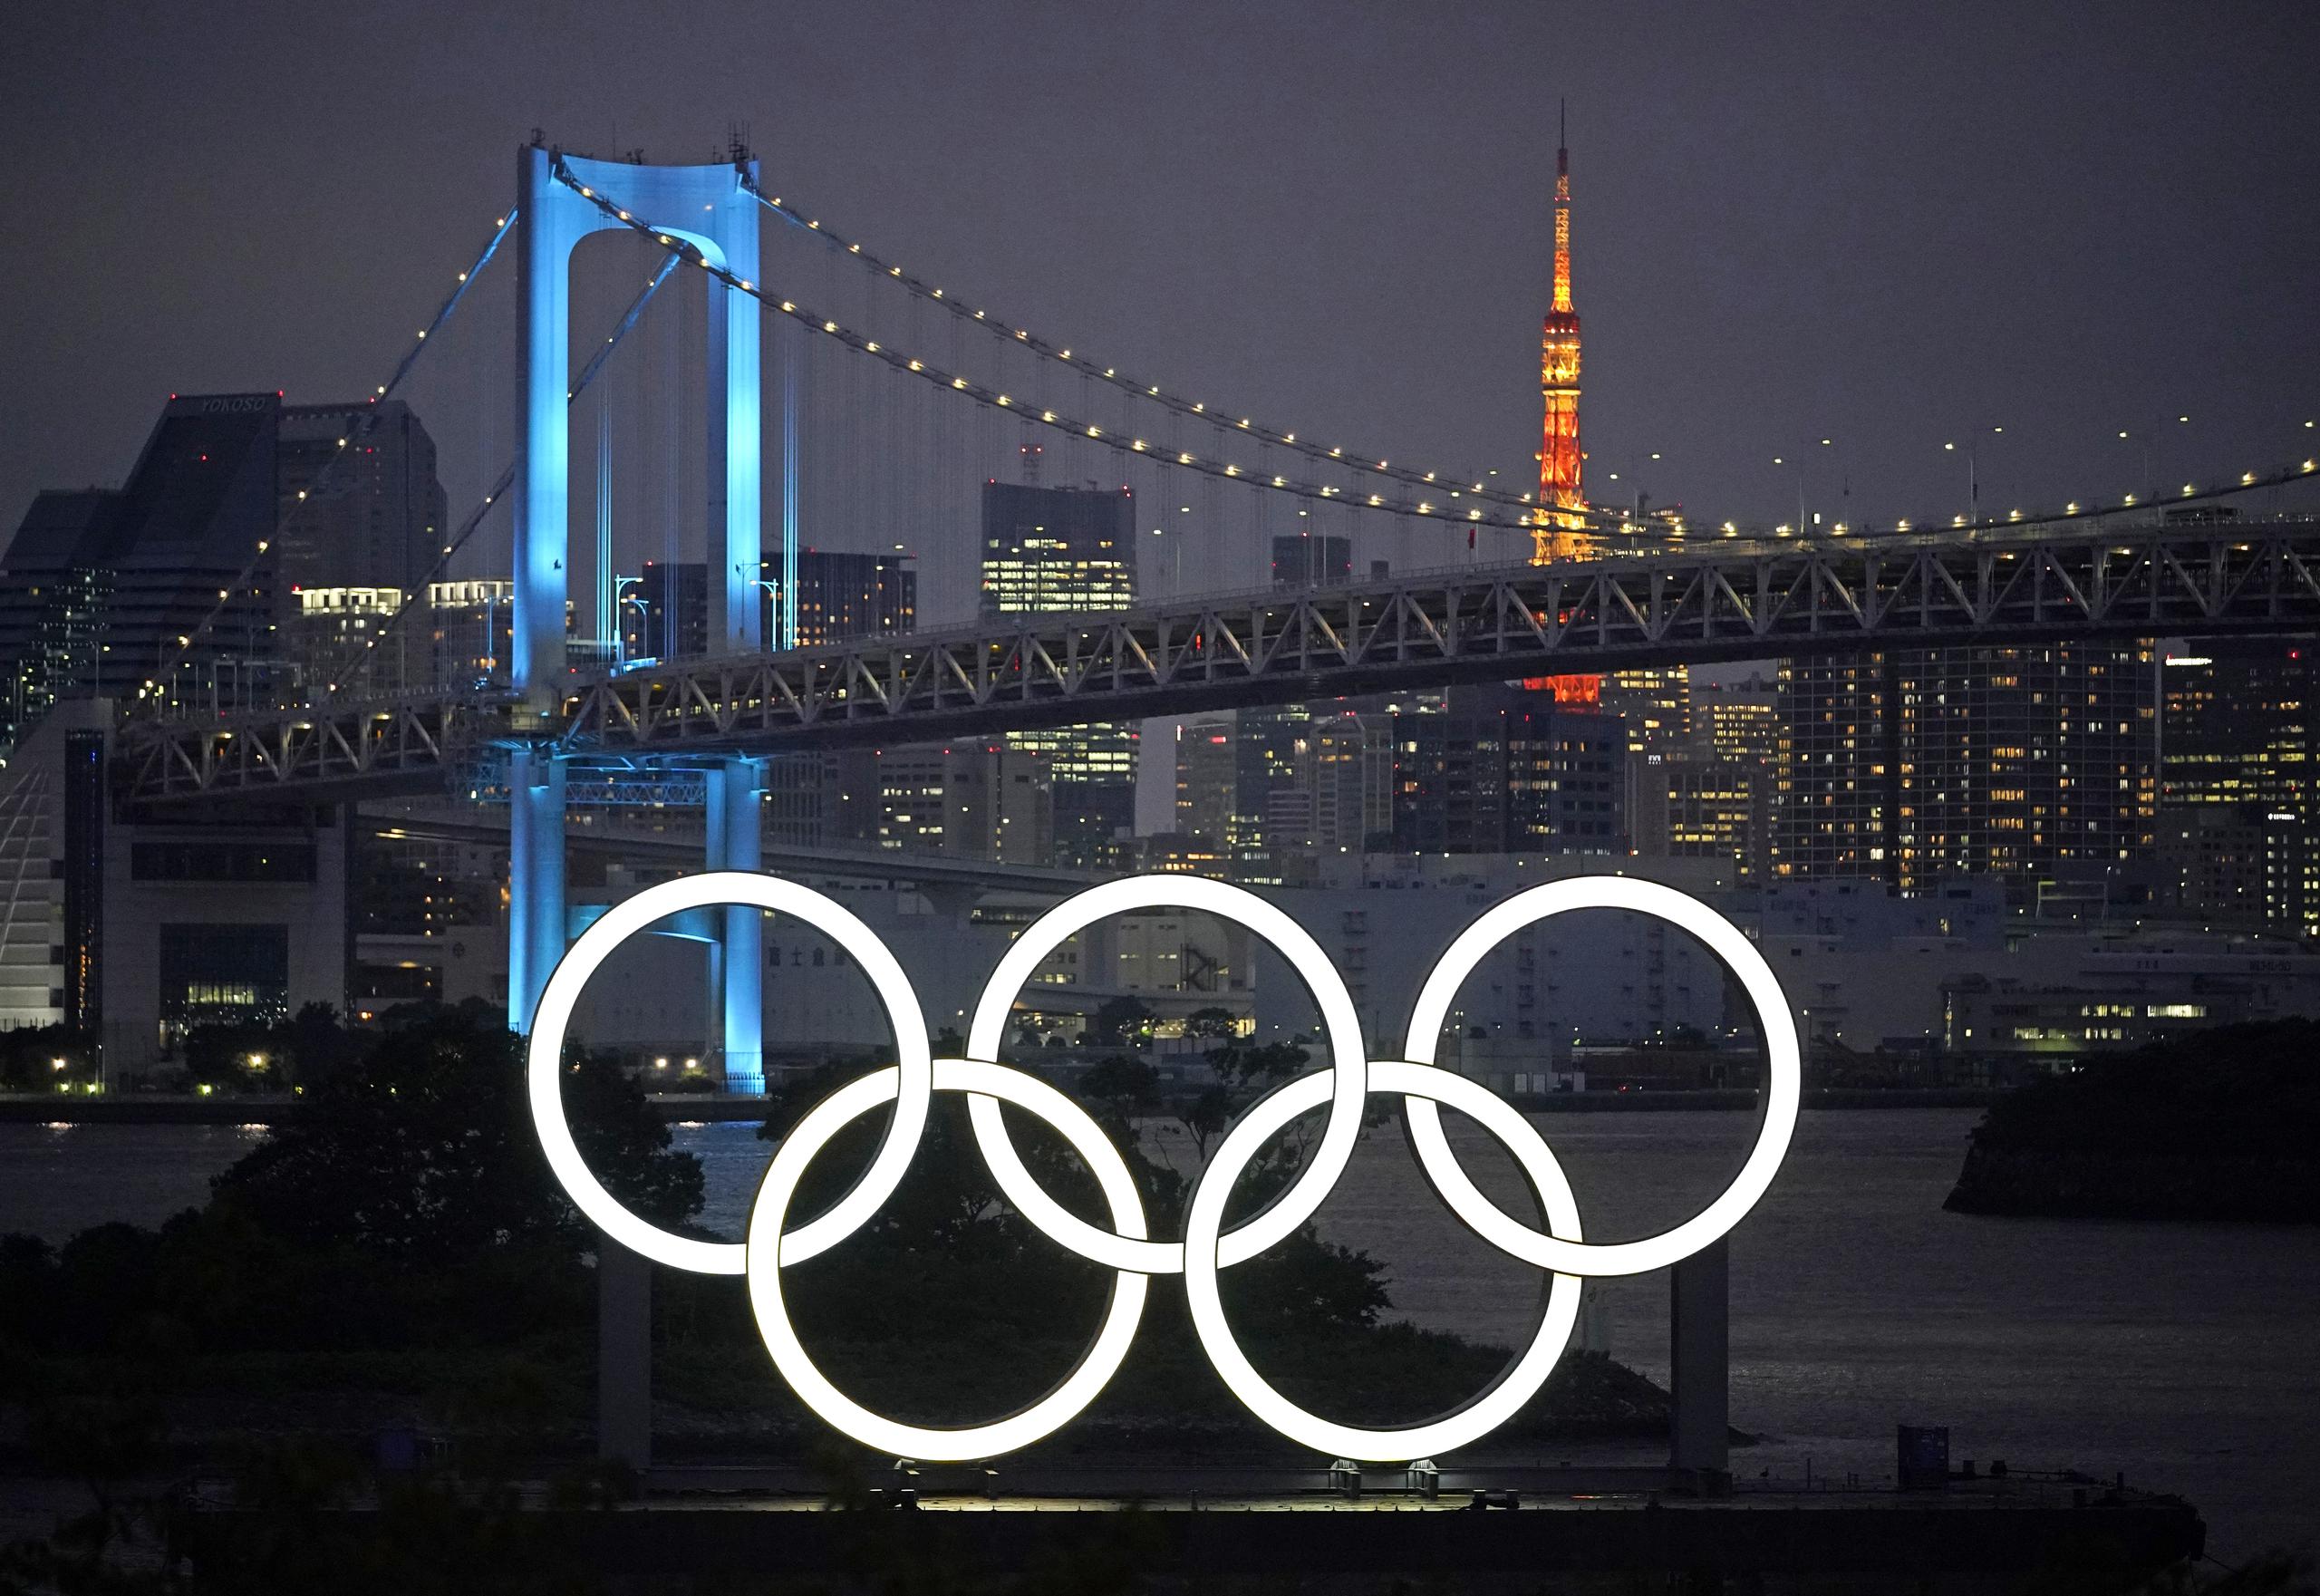 Los anillos entrelazados se exhibirán e iluminarán cada noche hasta el final de los Juegos Olímpicos en 2021.